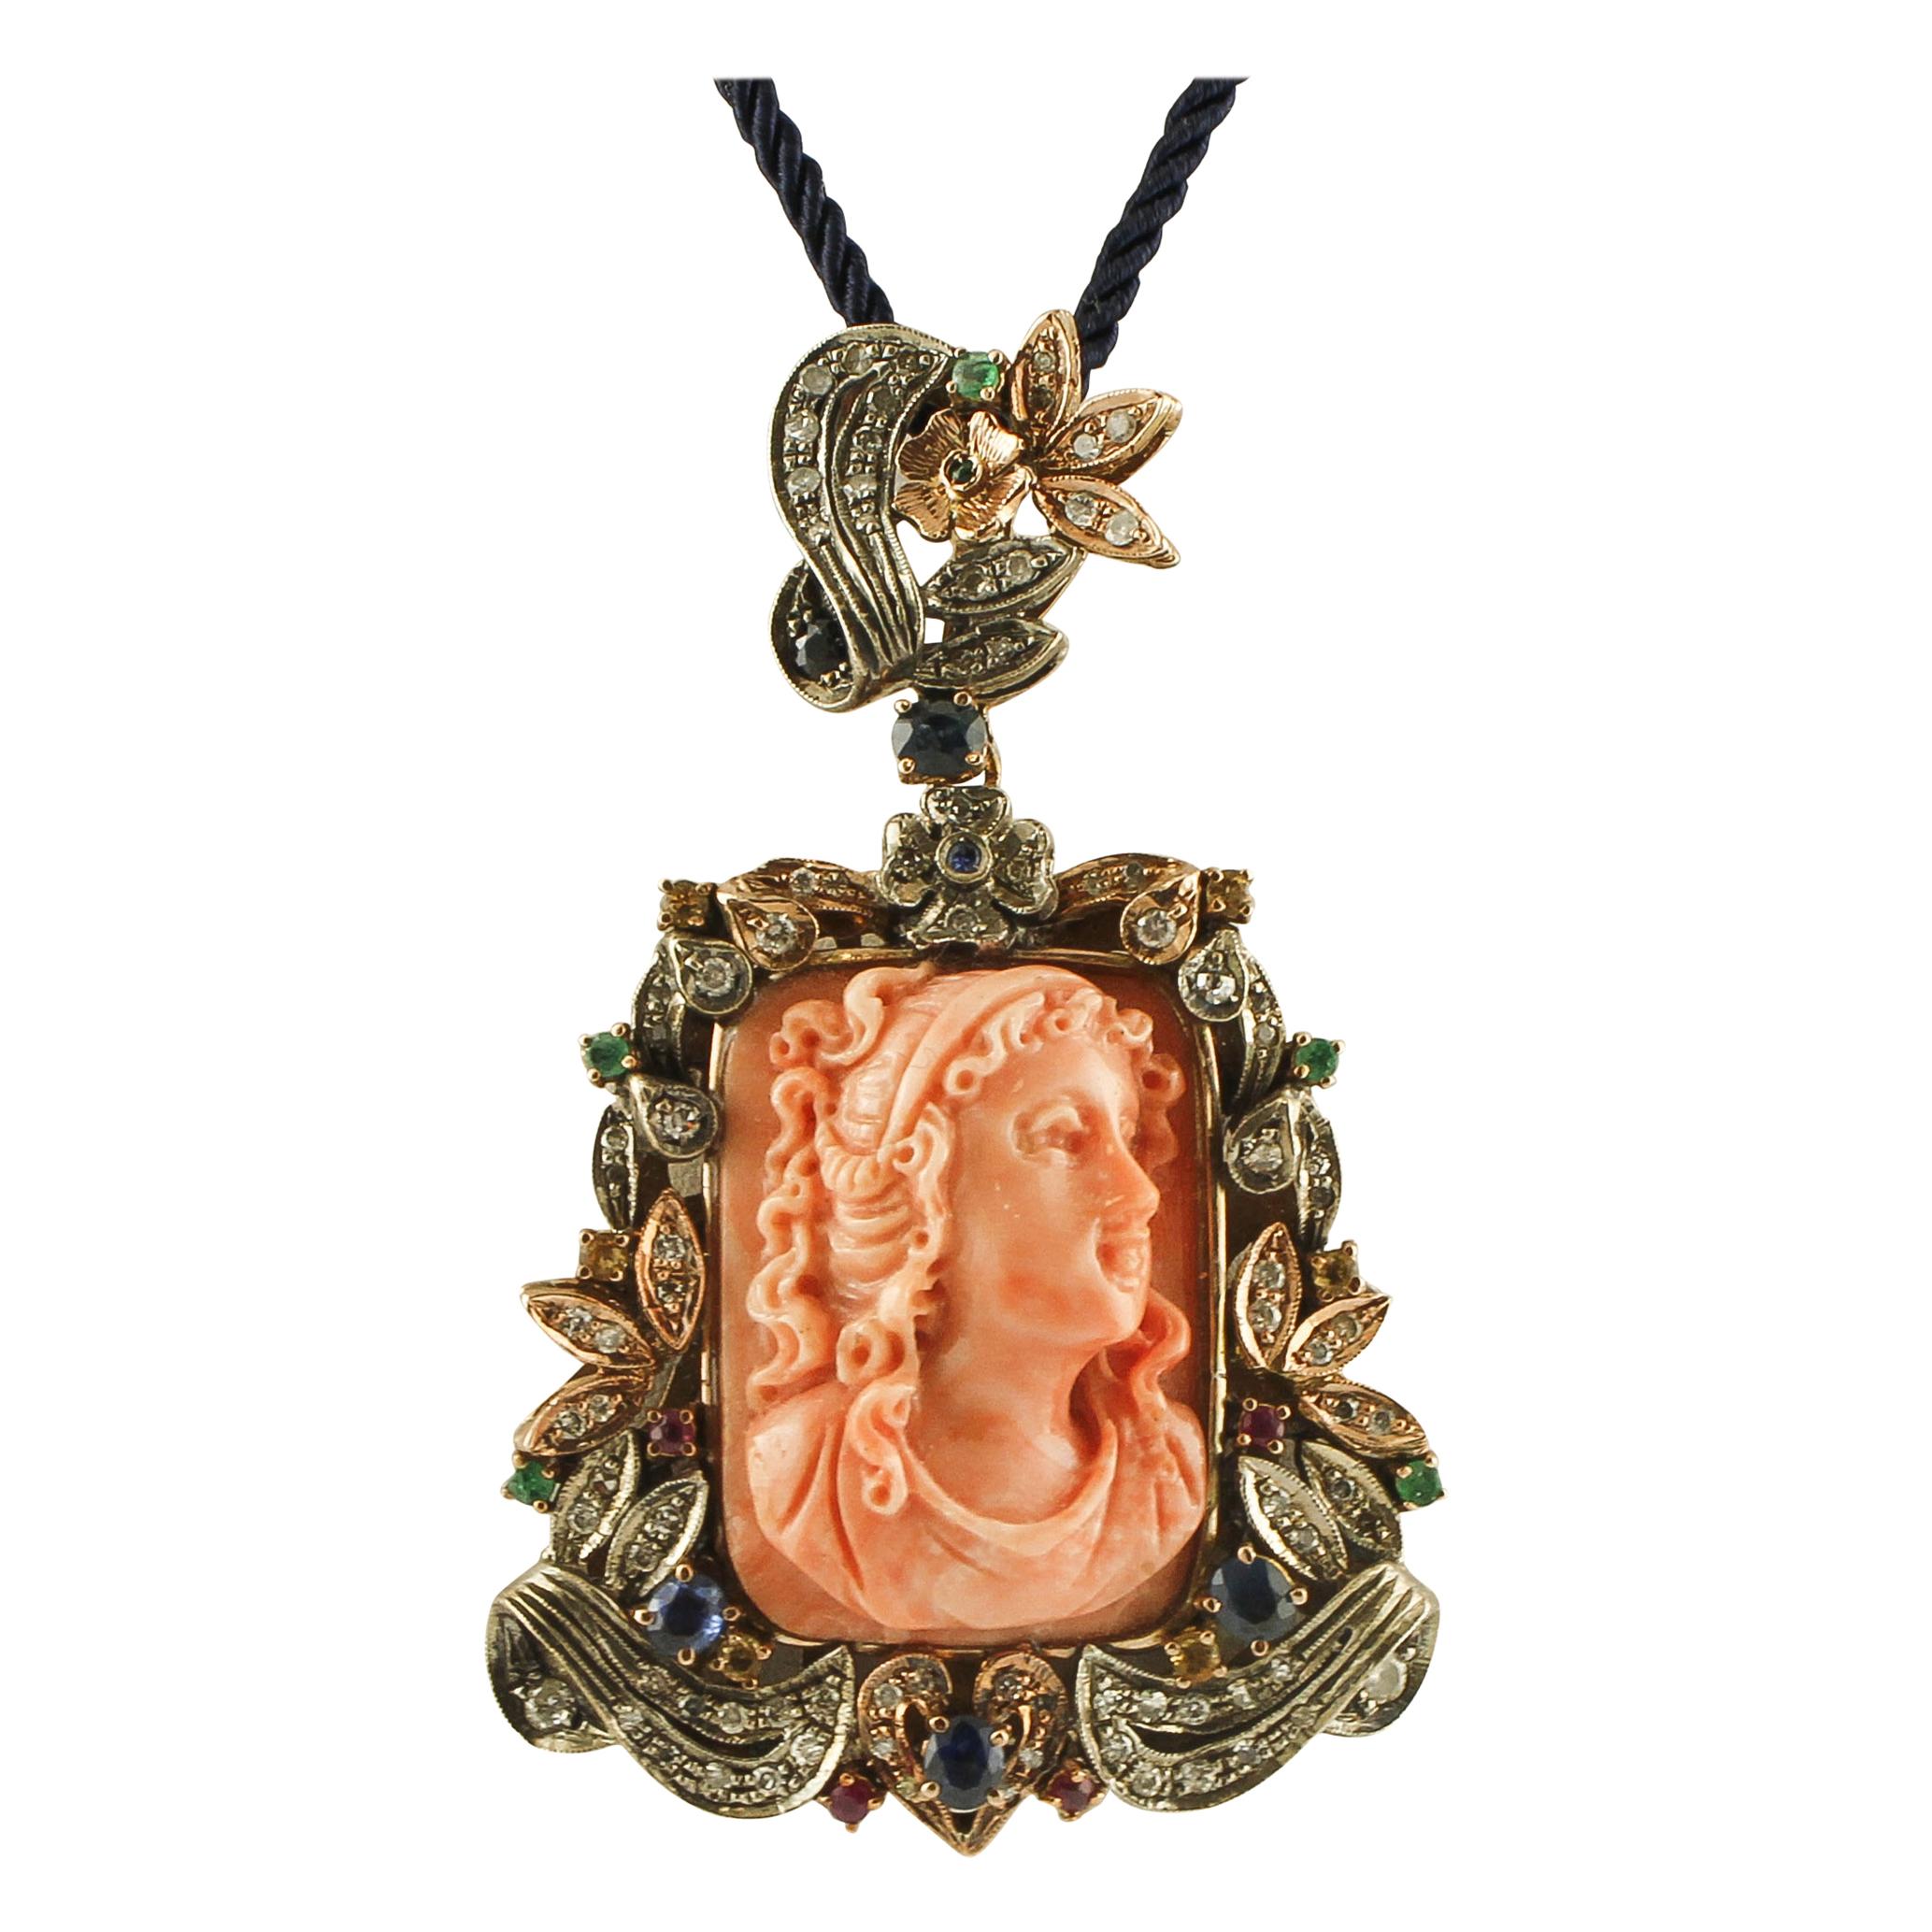 Corail orange gravé, diamants, rubis, saphirs bleus, pendentif en or et argent